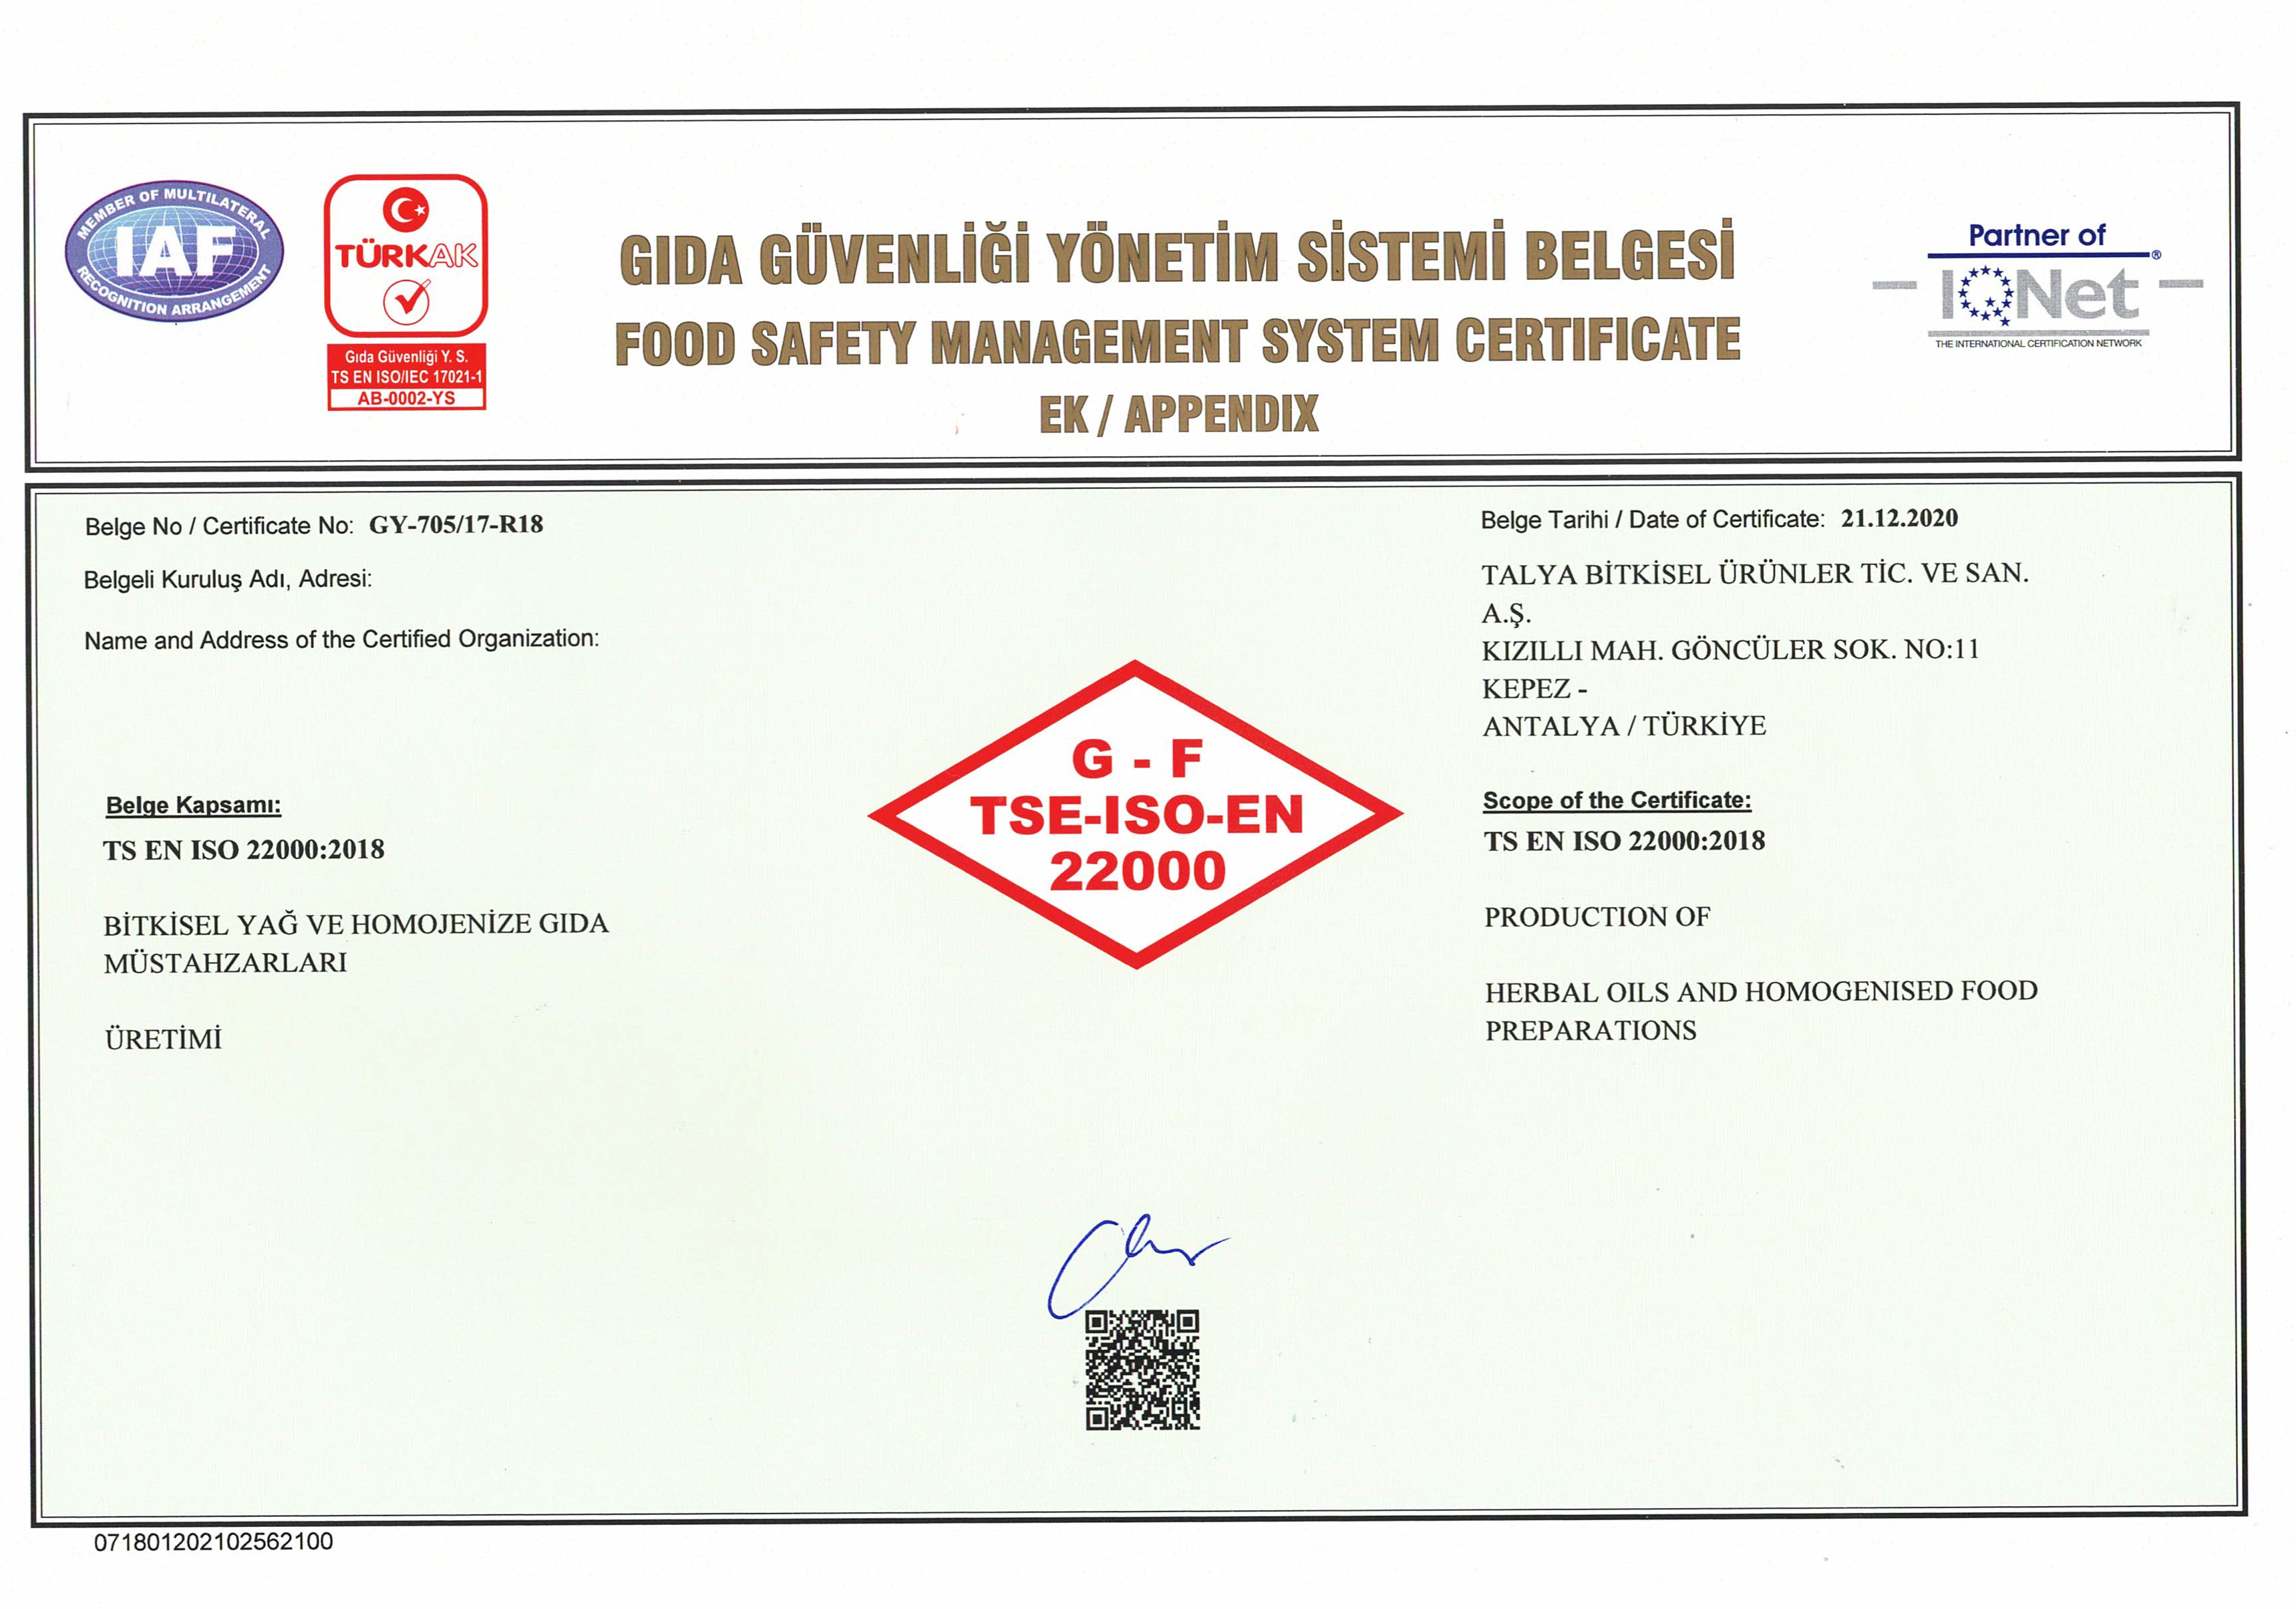 Gıda güvenliği yönetim sistemi belgesi talya bitkisel